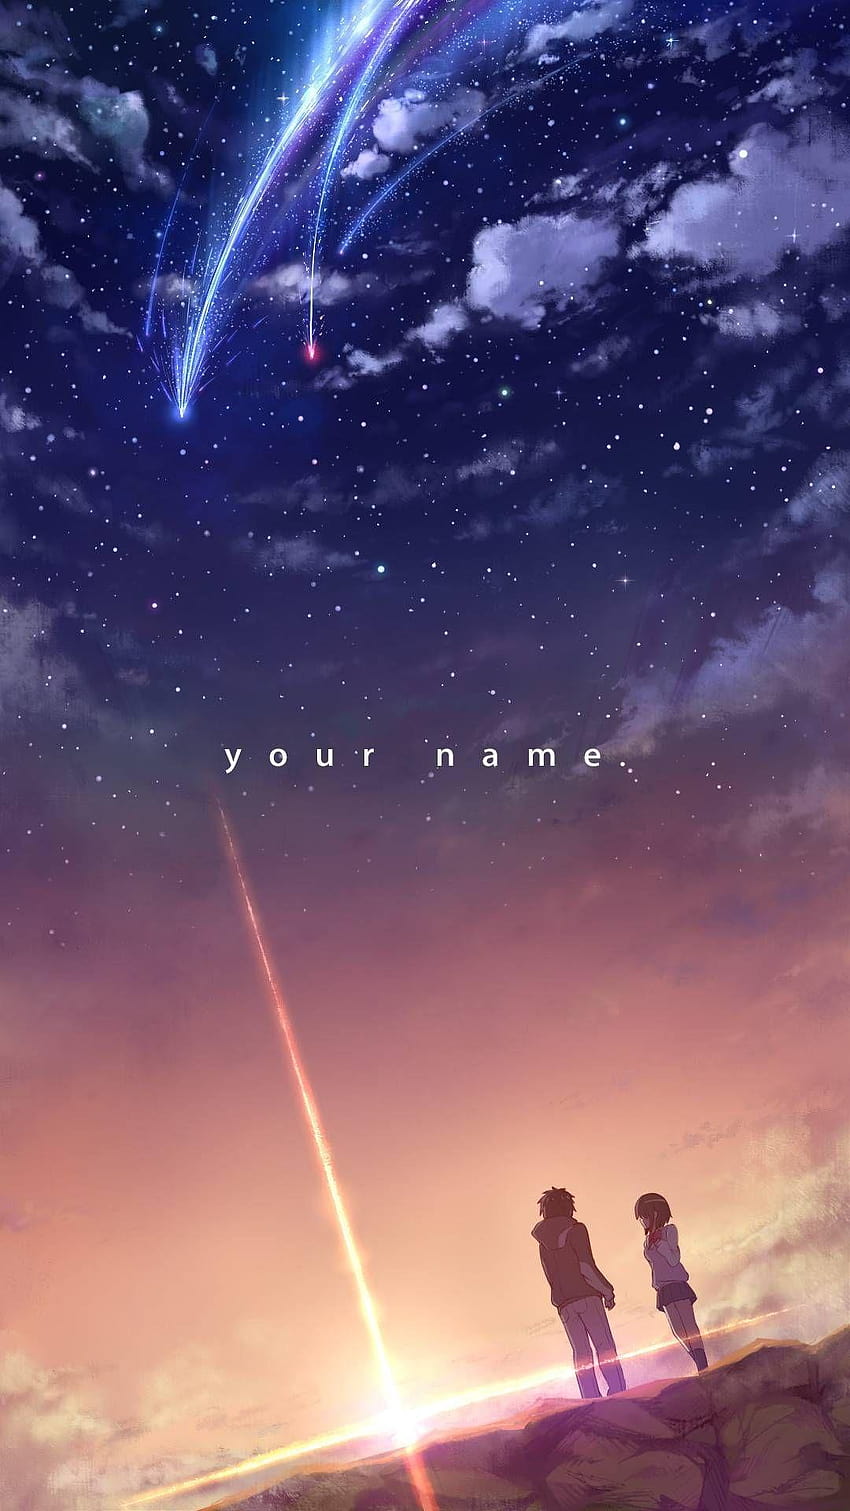 Your Name 4K Wallpaper Galore  Kimi no na wa, Anime background, Kimi no na  wa wallpaper